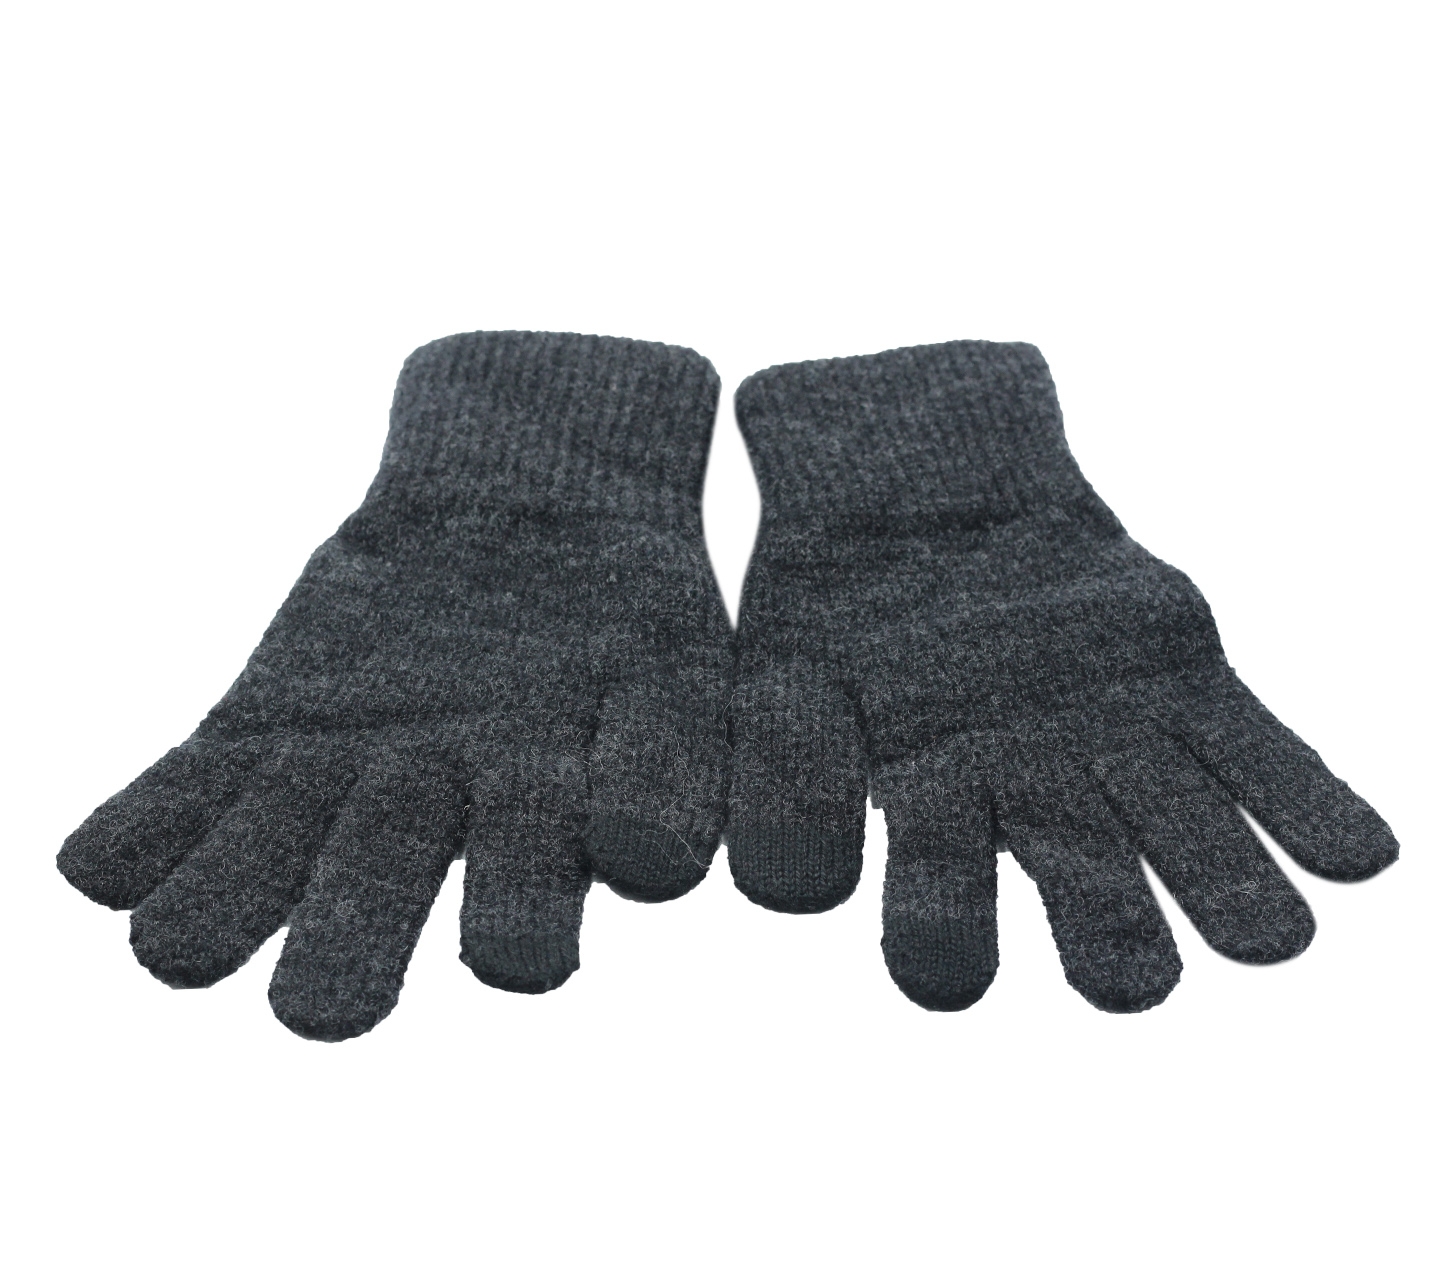 Uniqlo Dark Grey Gloves